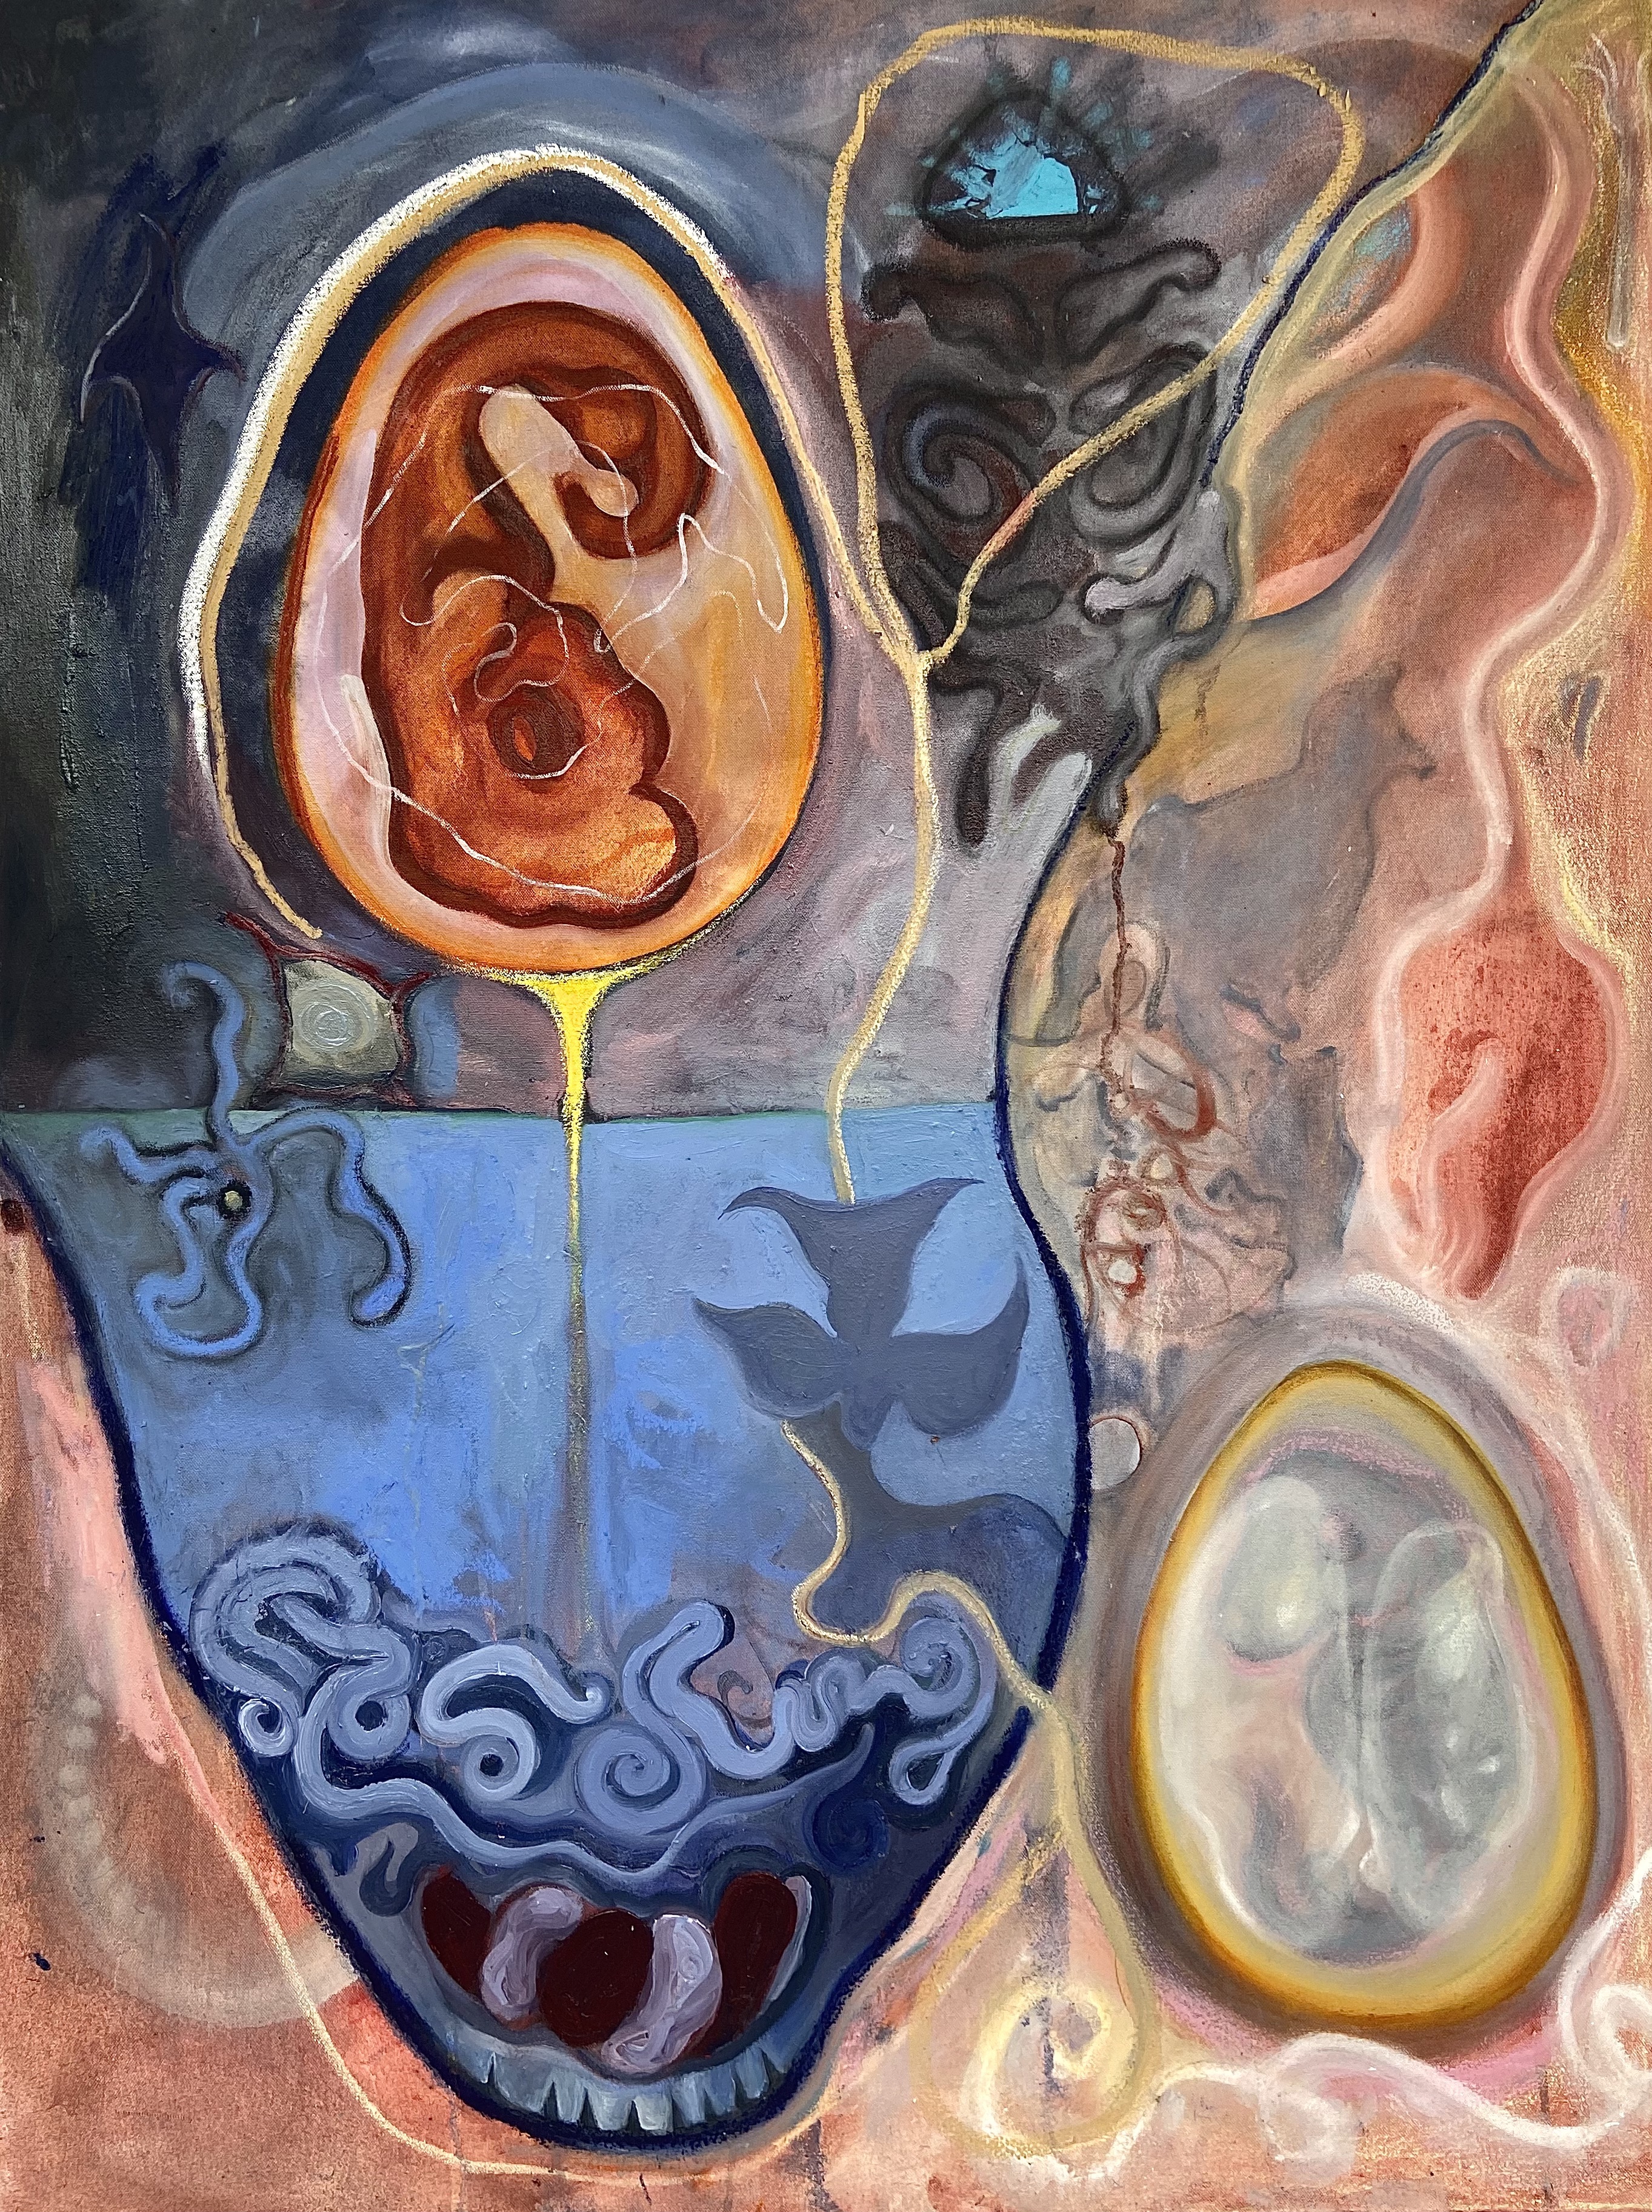 Bathtub portal embryo painting